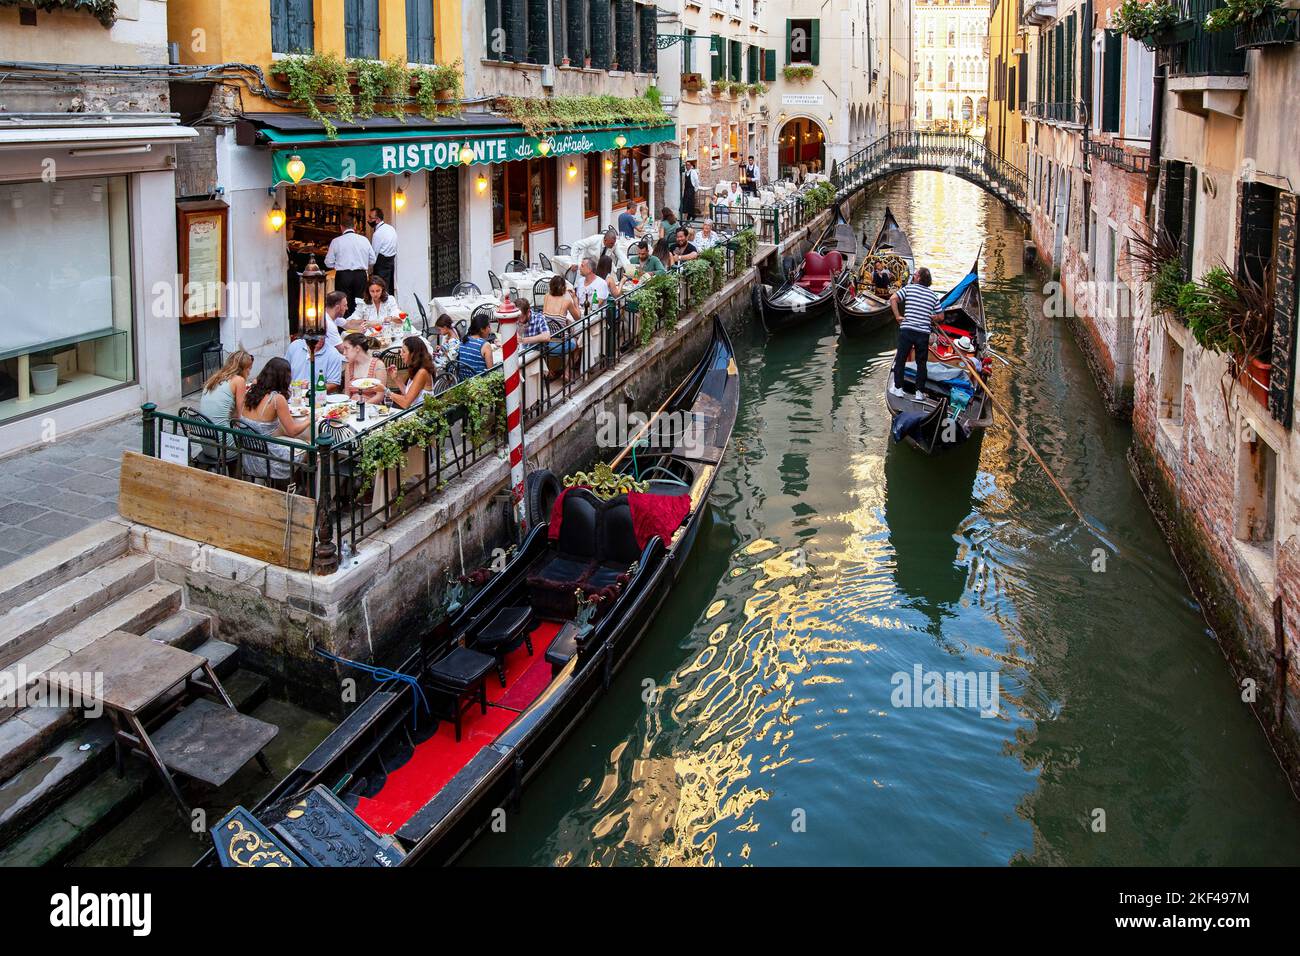 Typisches Ristorante an einem Kanal, Gondeln, Venedig, Venetien, Italien Foto Stock